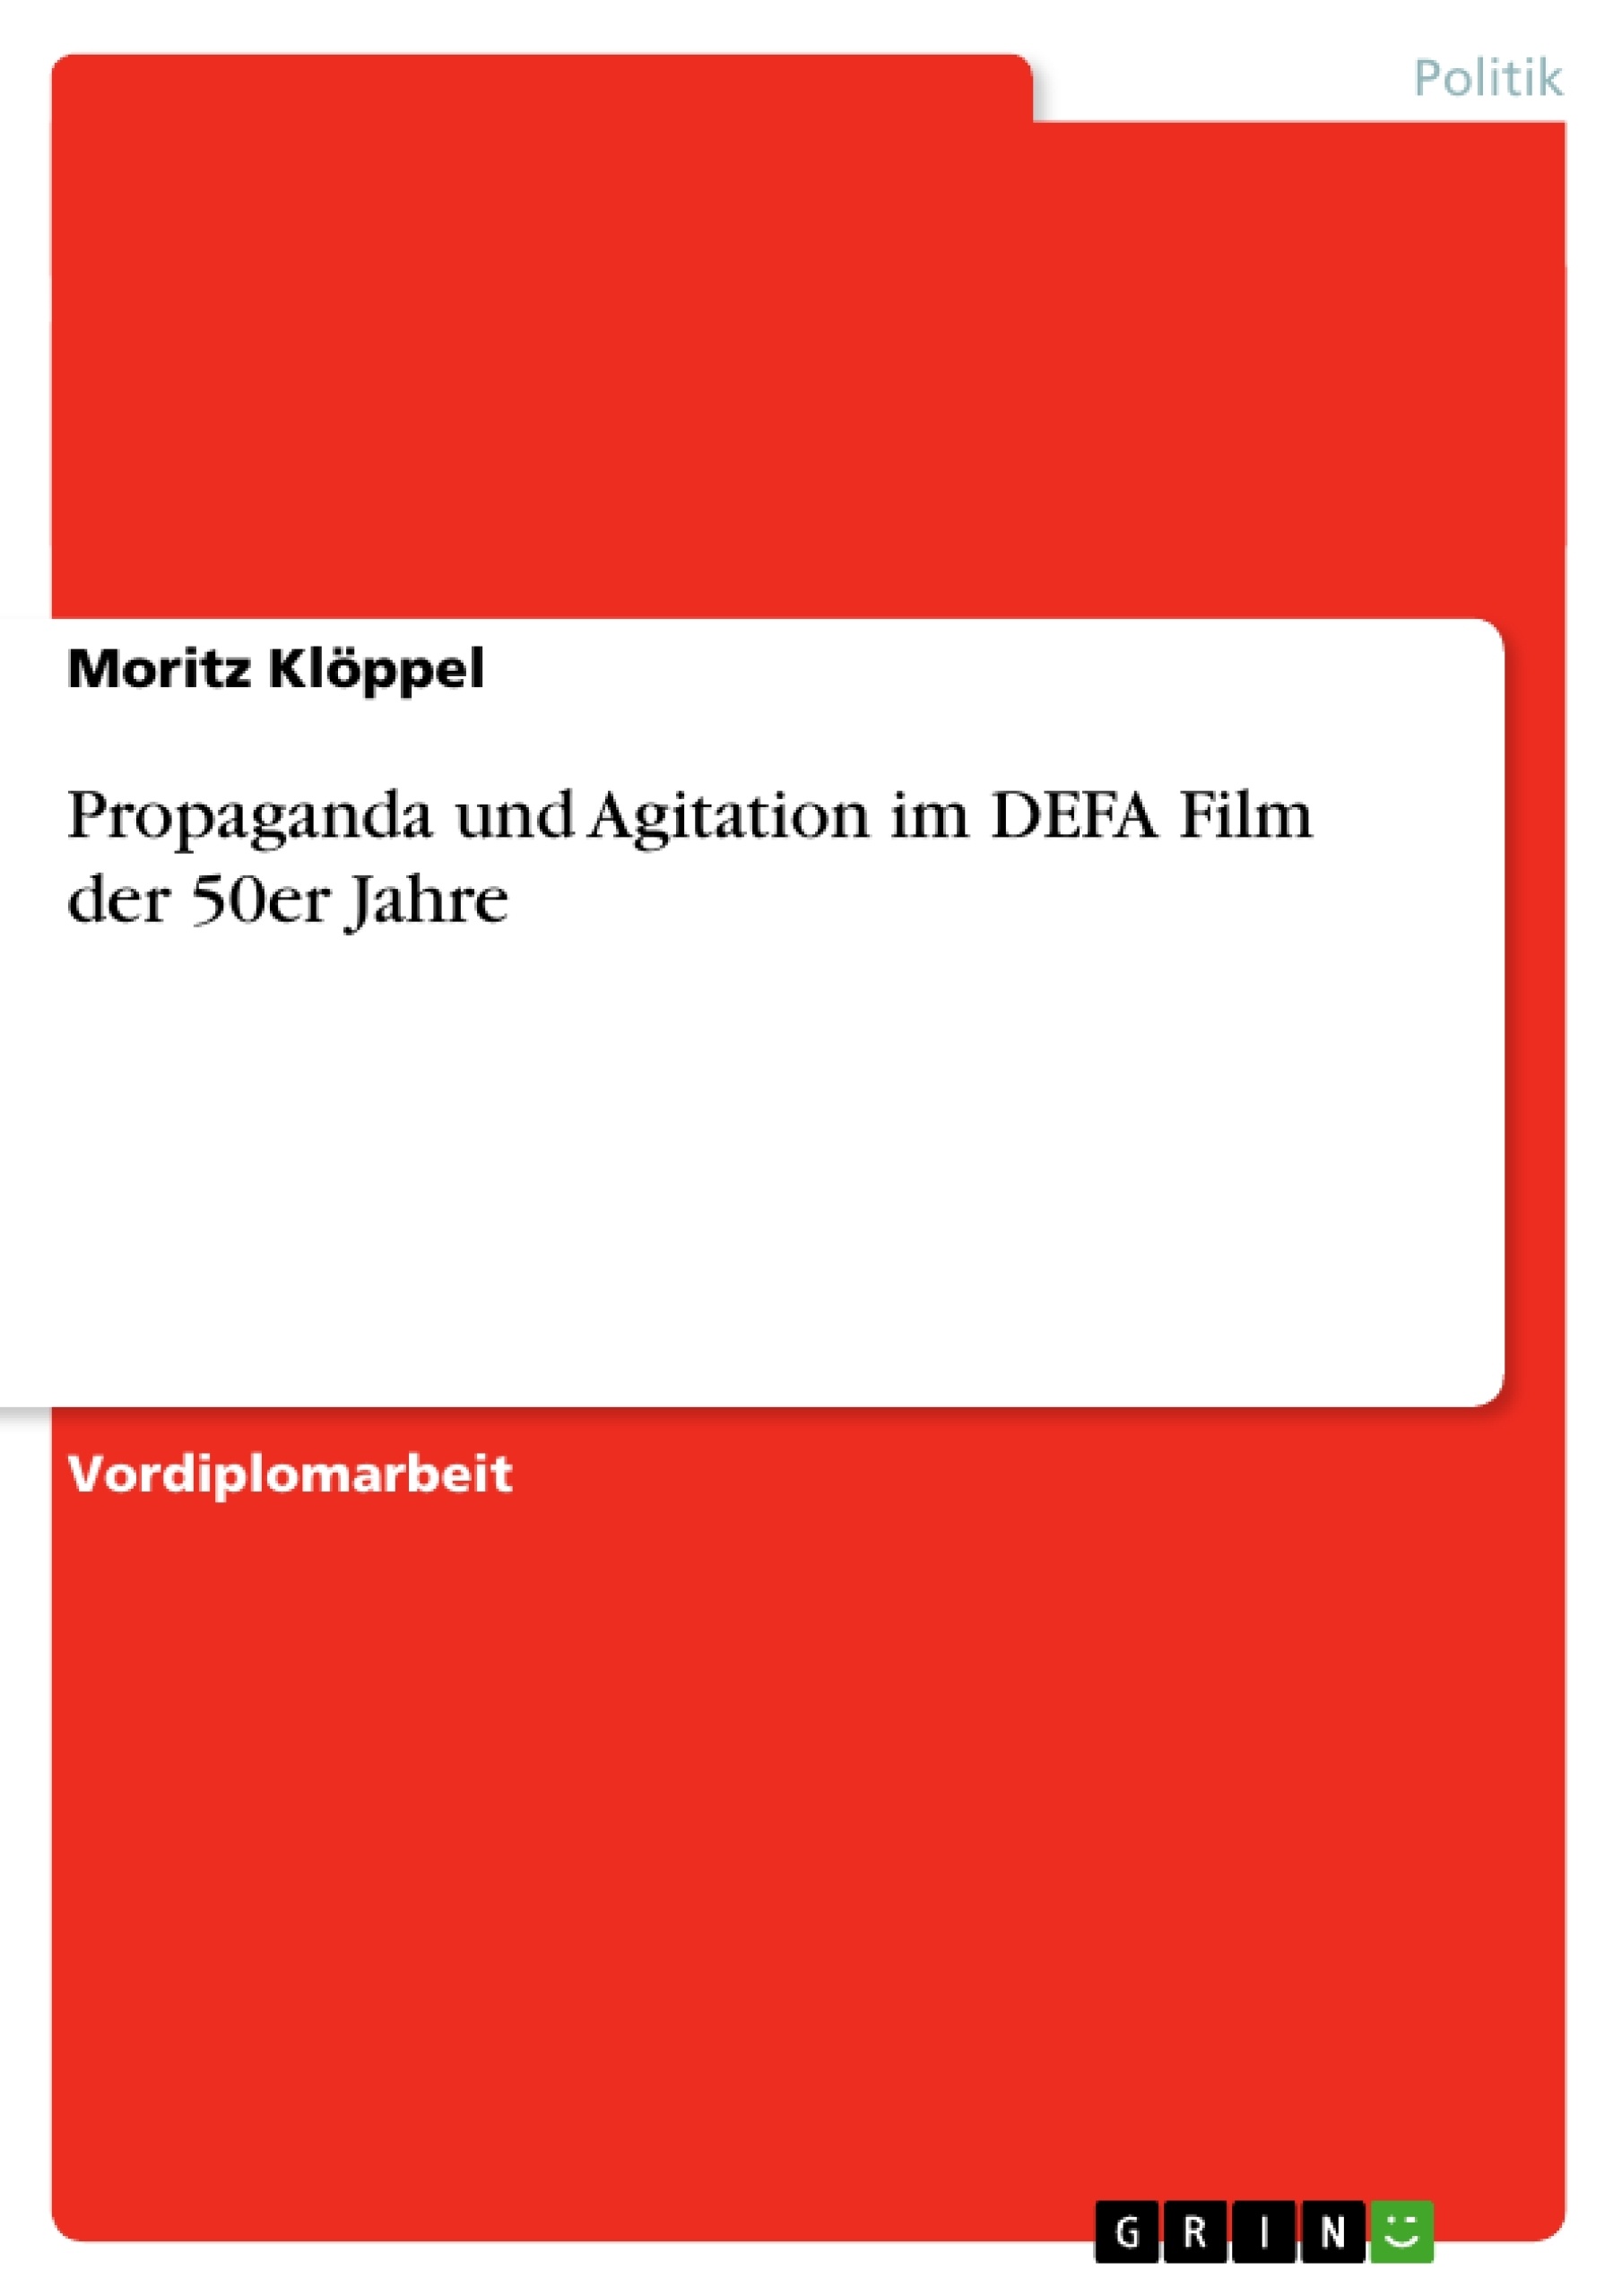 Title: Propaganda und Agitation im DEFA Film der 50er Jahre